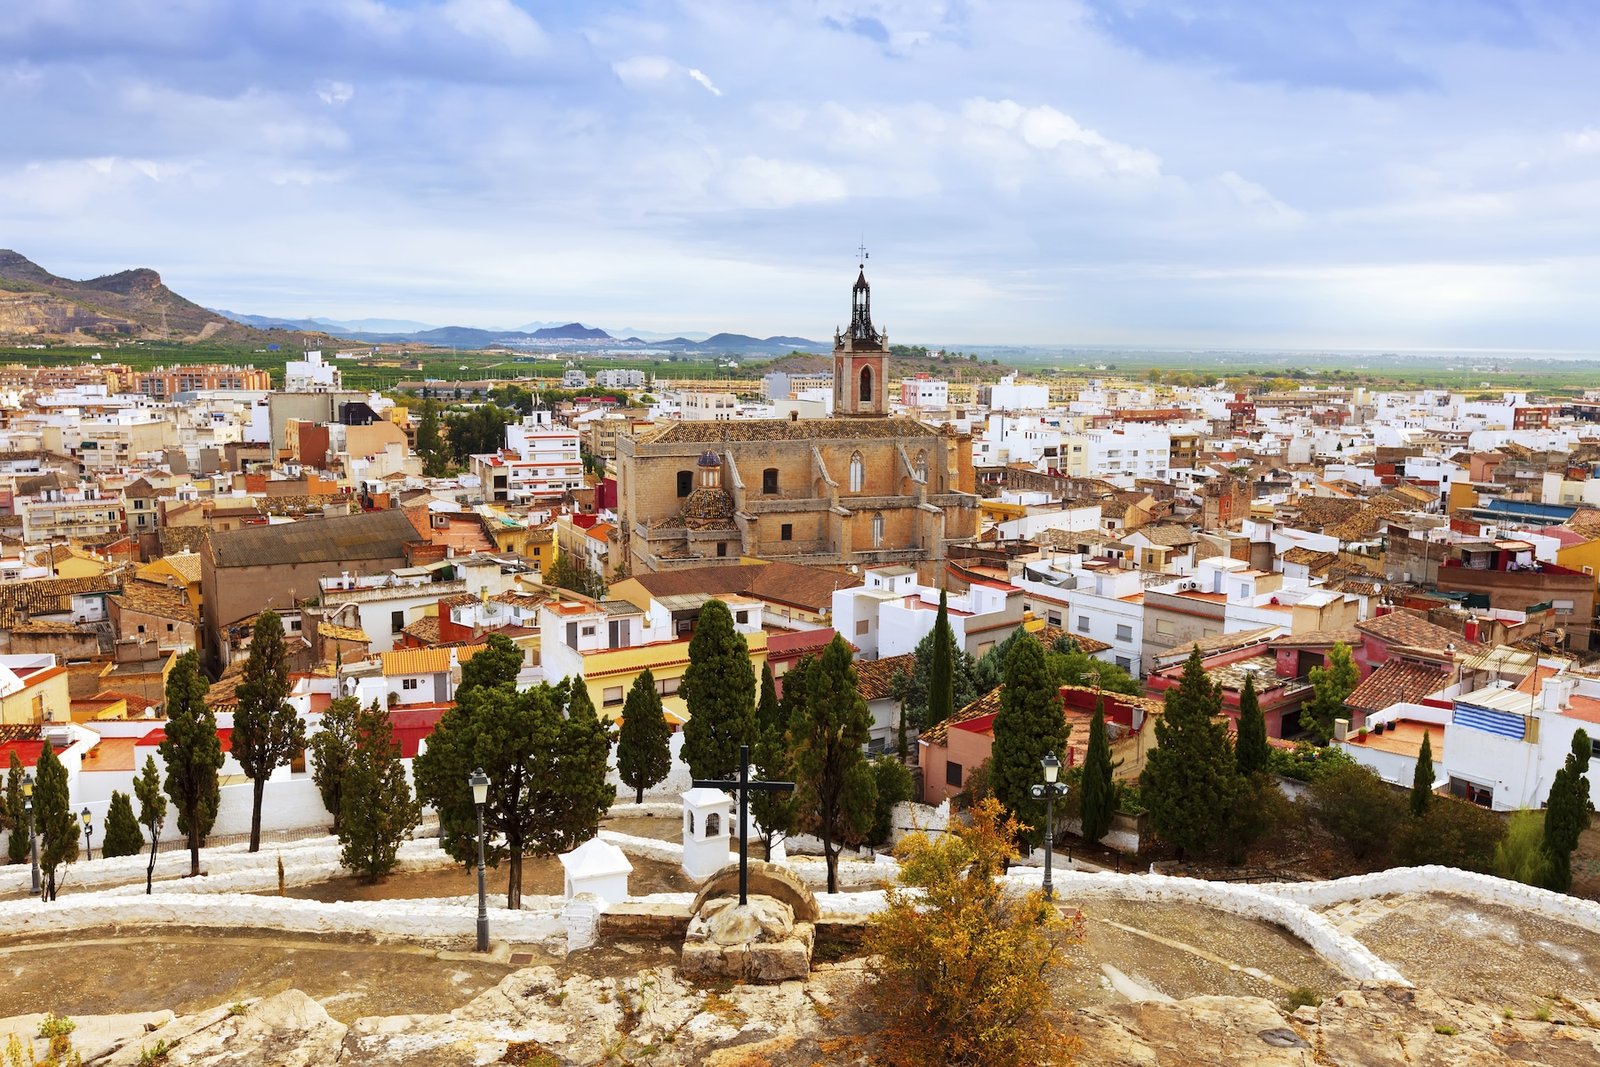 El Castillo de Sagunto hunde sus raíces en un asentamiento íbero. Es uno de los lugares más bonitos de la Comunidad Valenciana